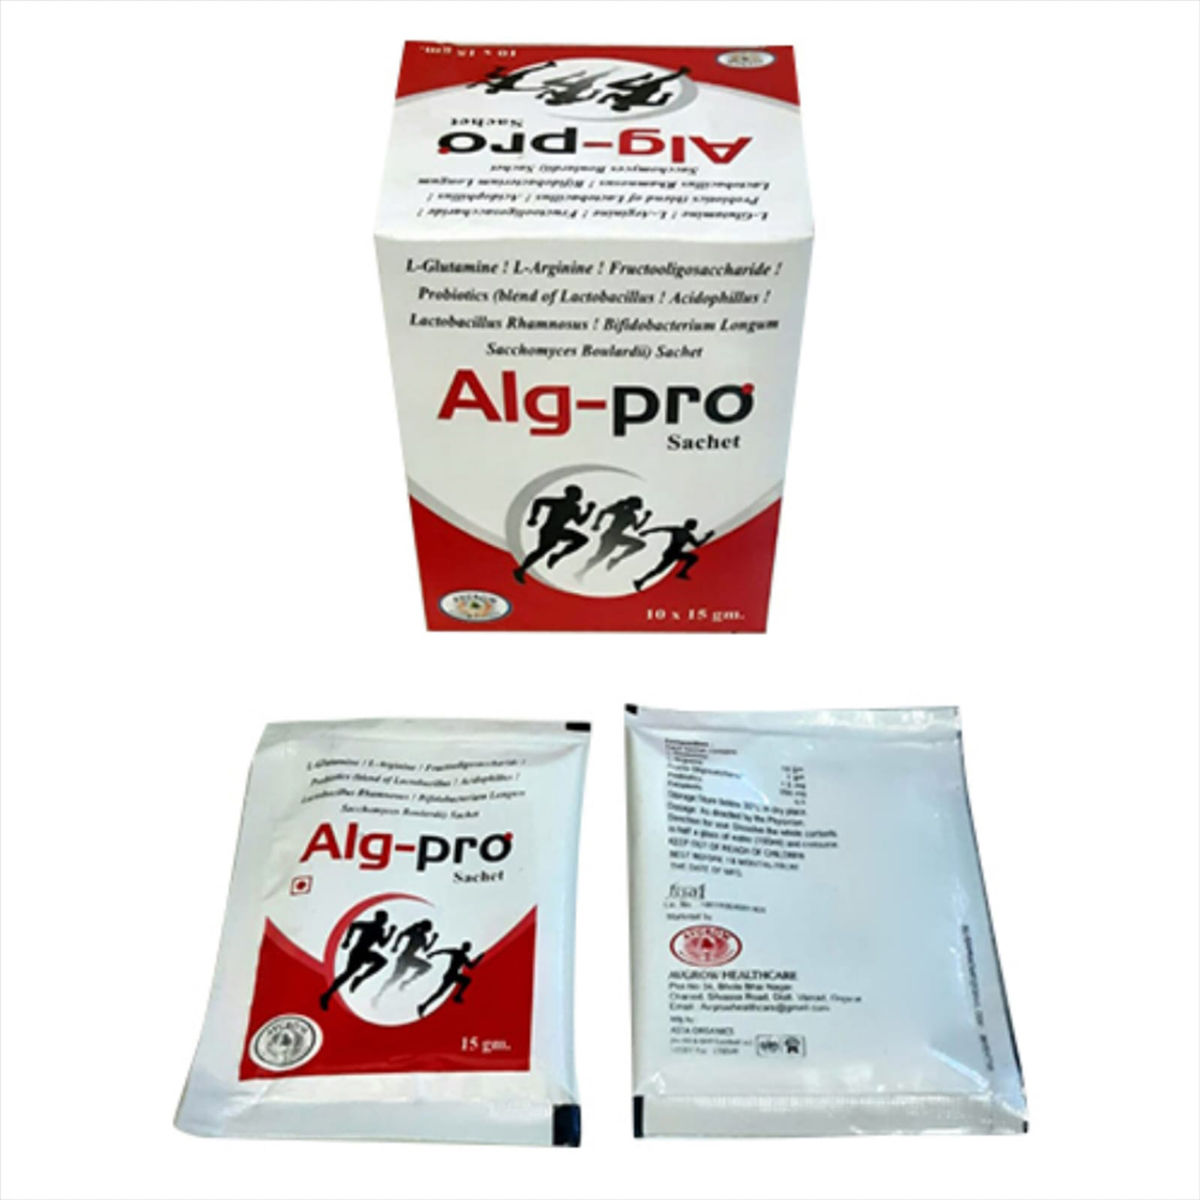 Buy Alg-Pro Sachet 15 gm Online